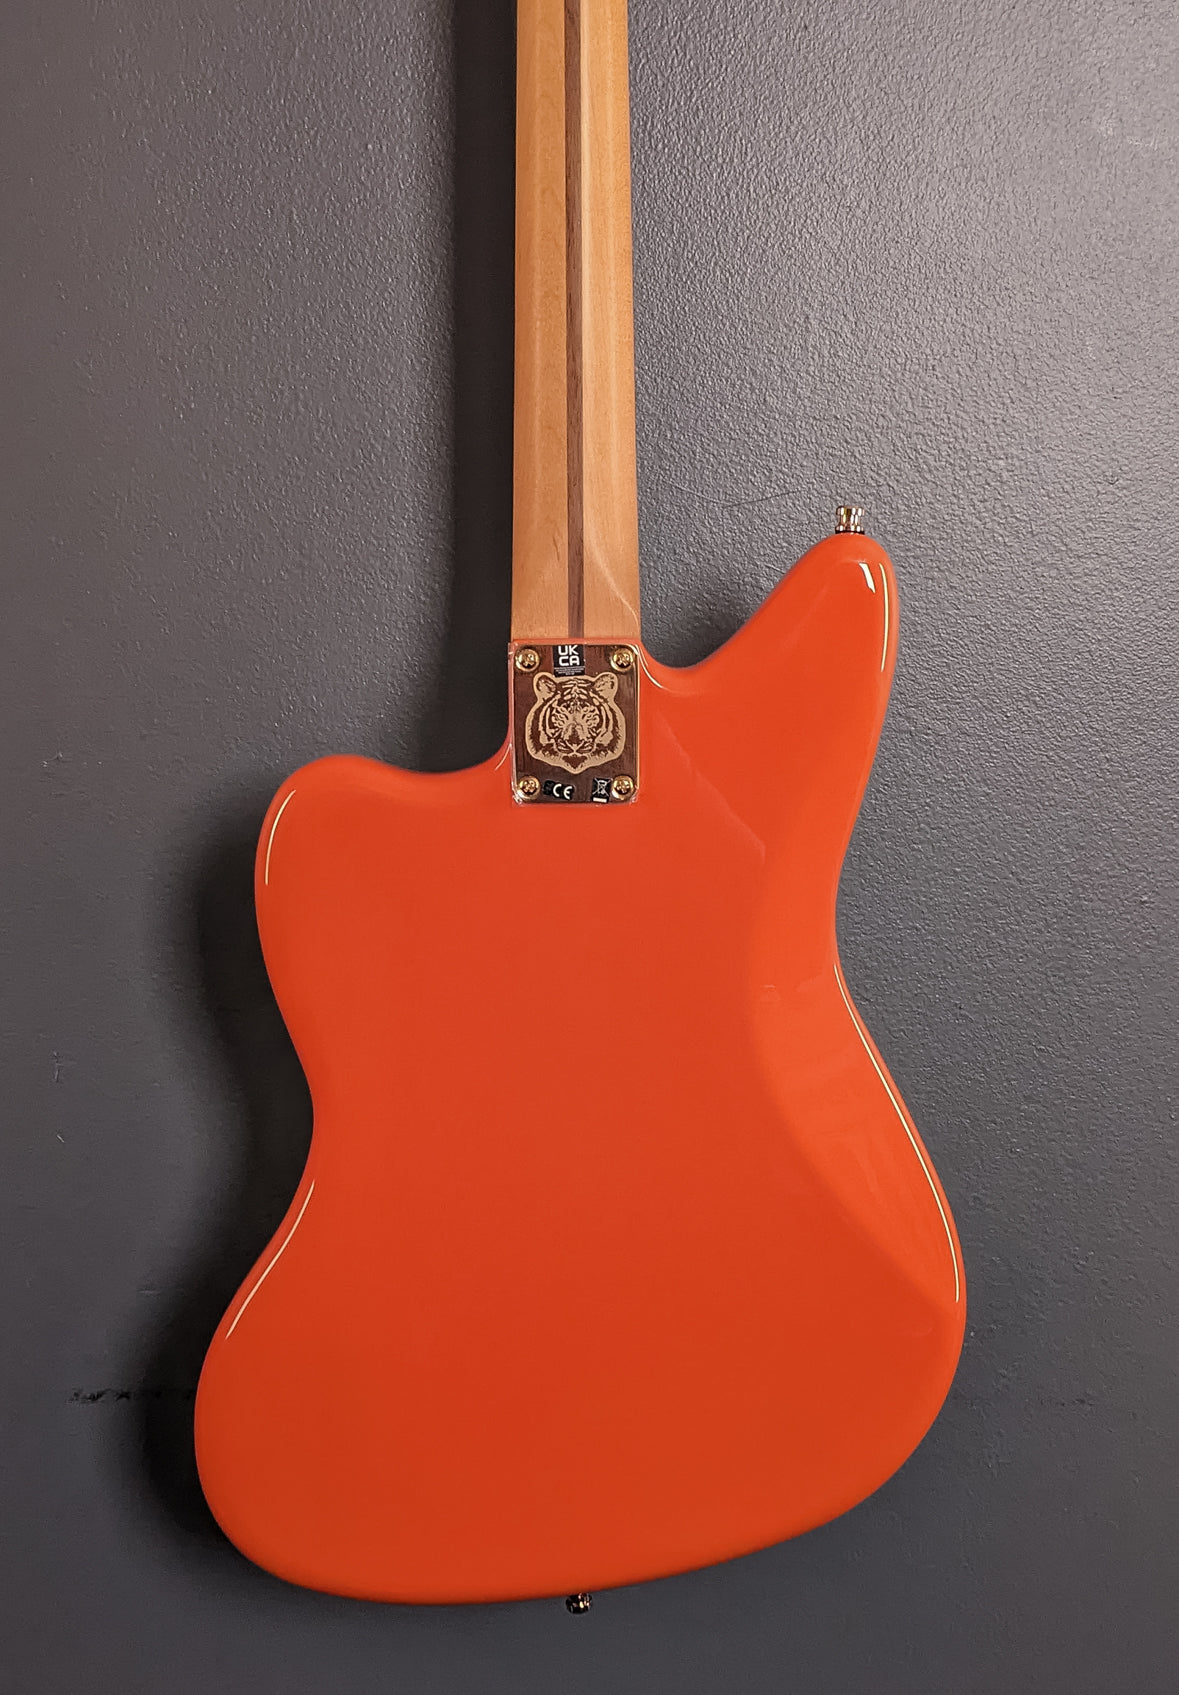 Limited Edition Mike Kerr Jaguar Bass - Tiger's Blood Orange